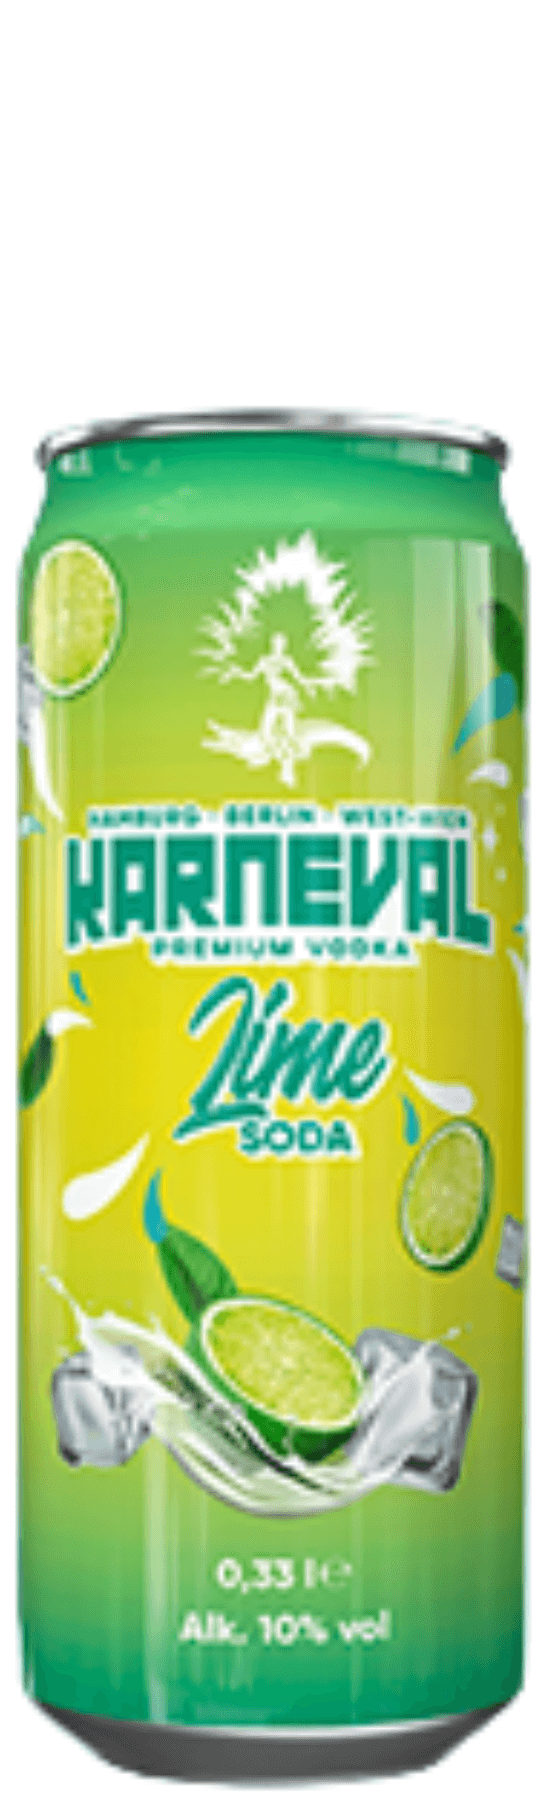 Karneval Vodka Lime Soda Mix 0,33 l Dose